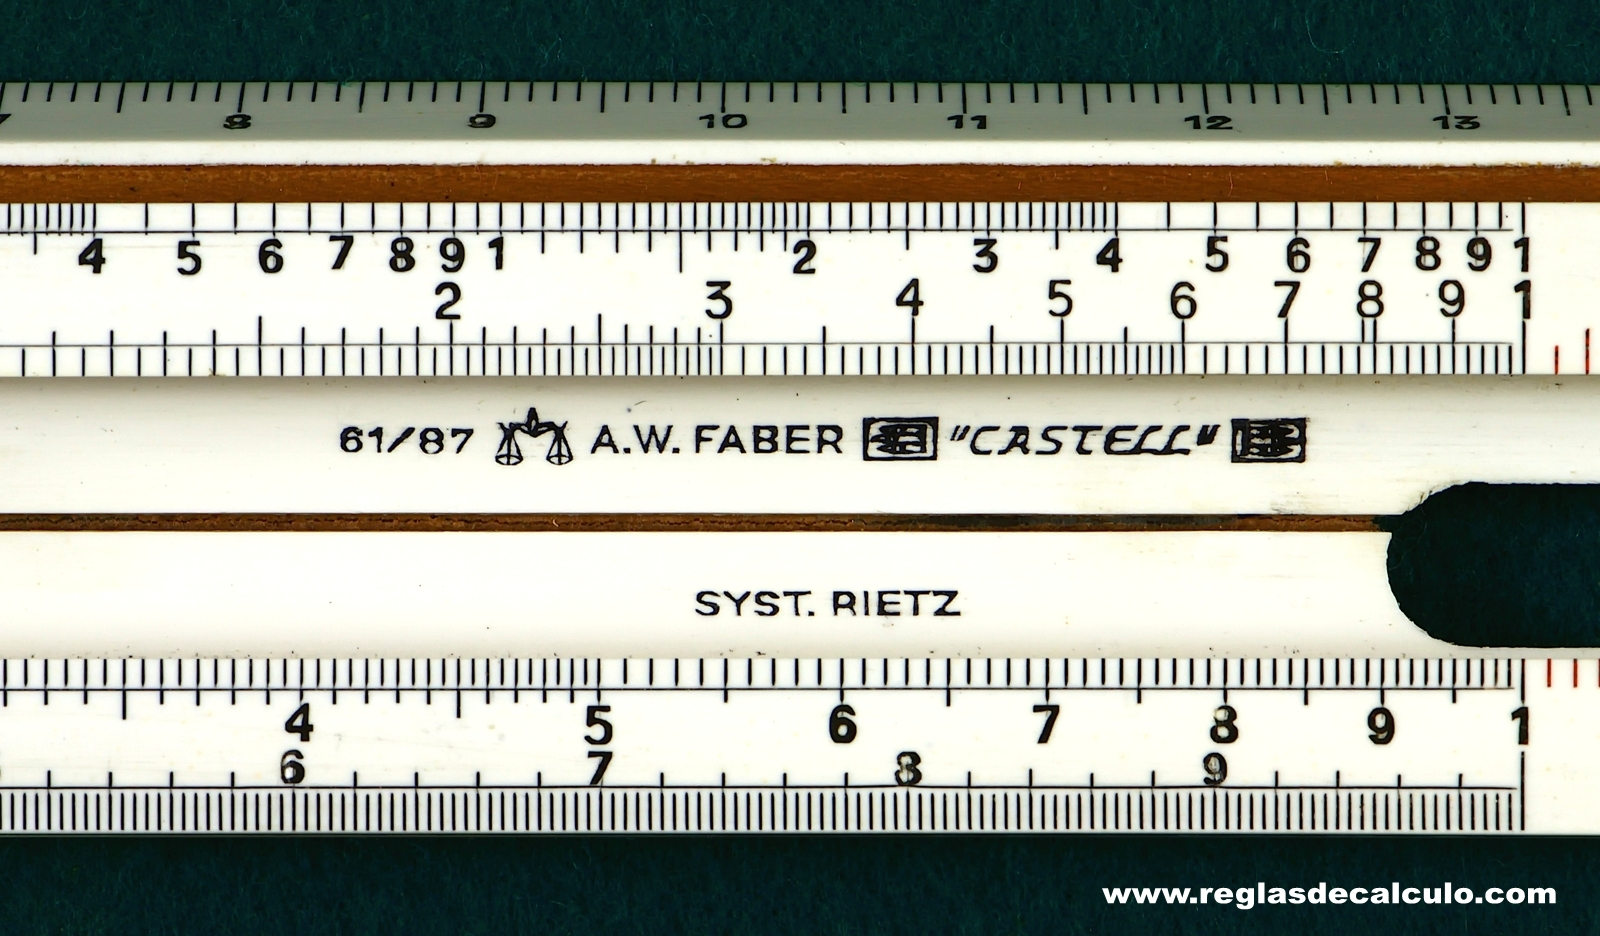 Regla de Calculo Slide rule Faber Castell 61/87